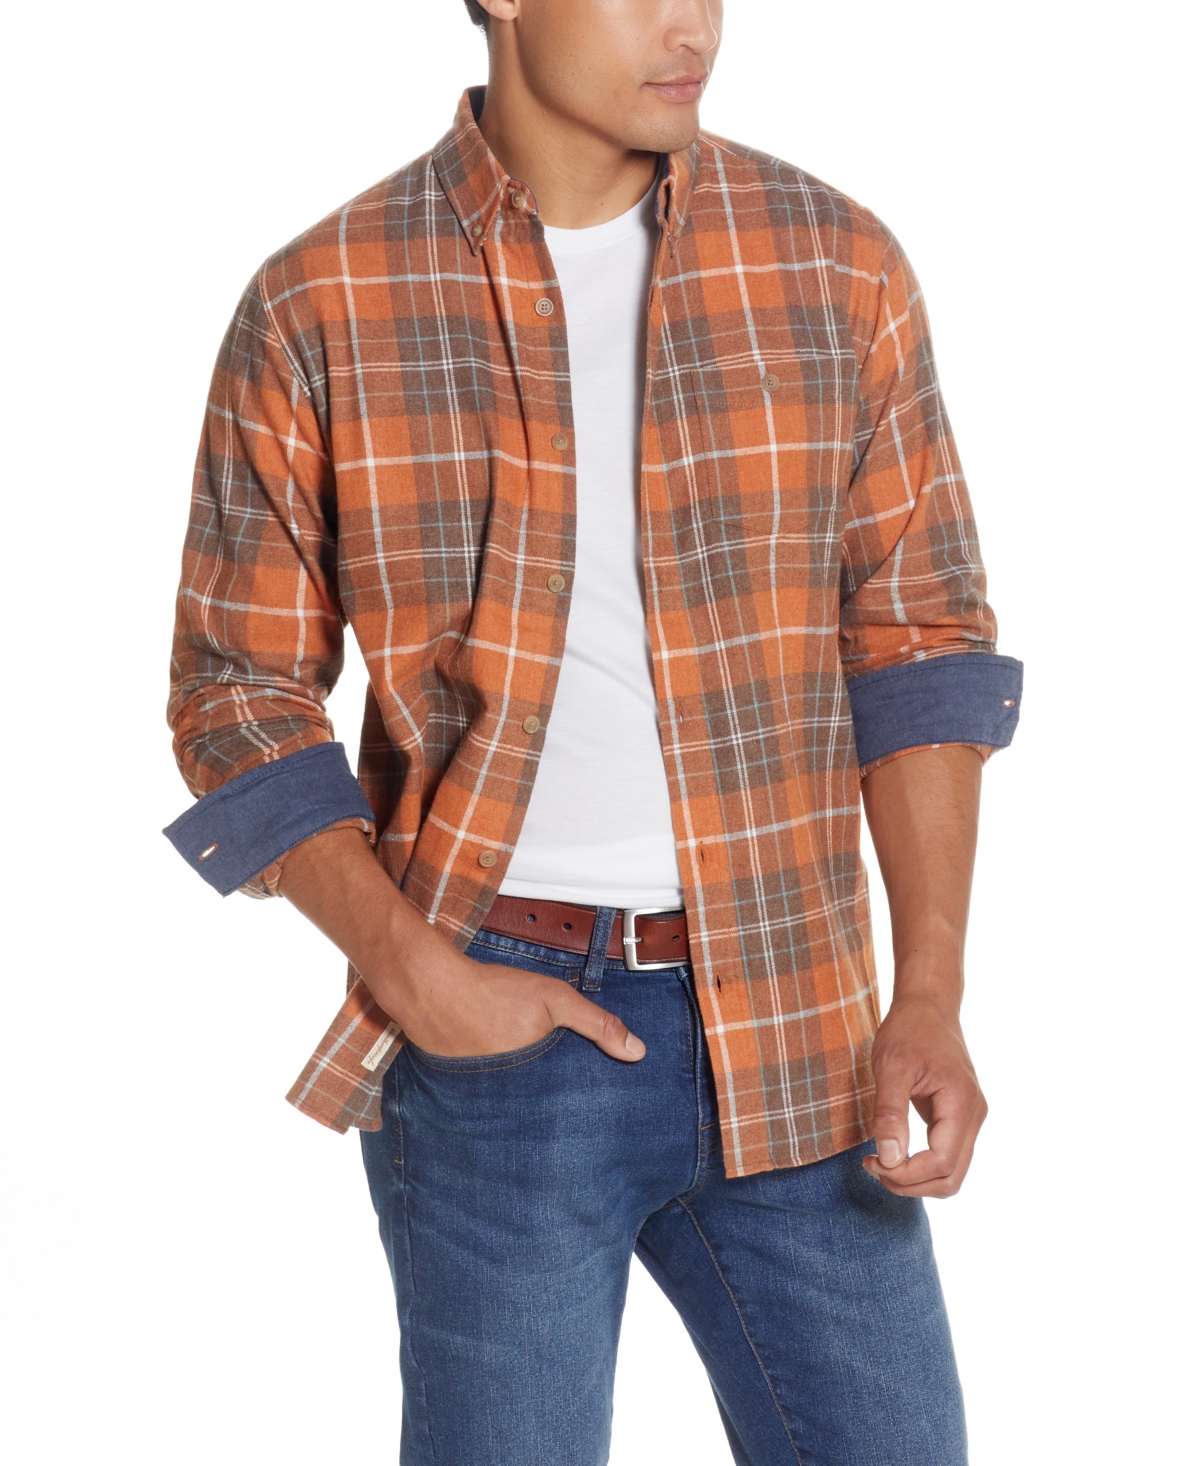 Men's Antique-Like Flannel Shirt - Cabernet